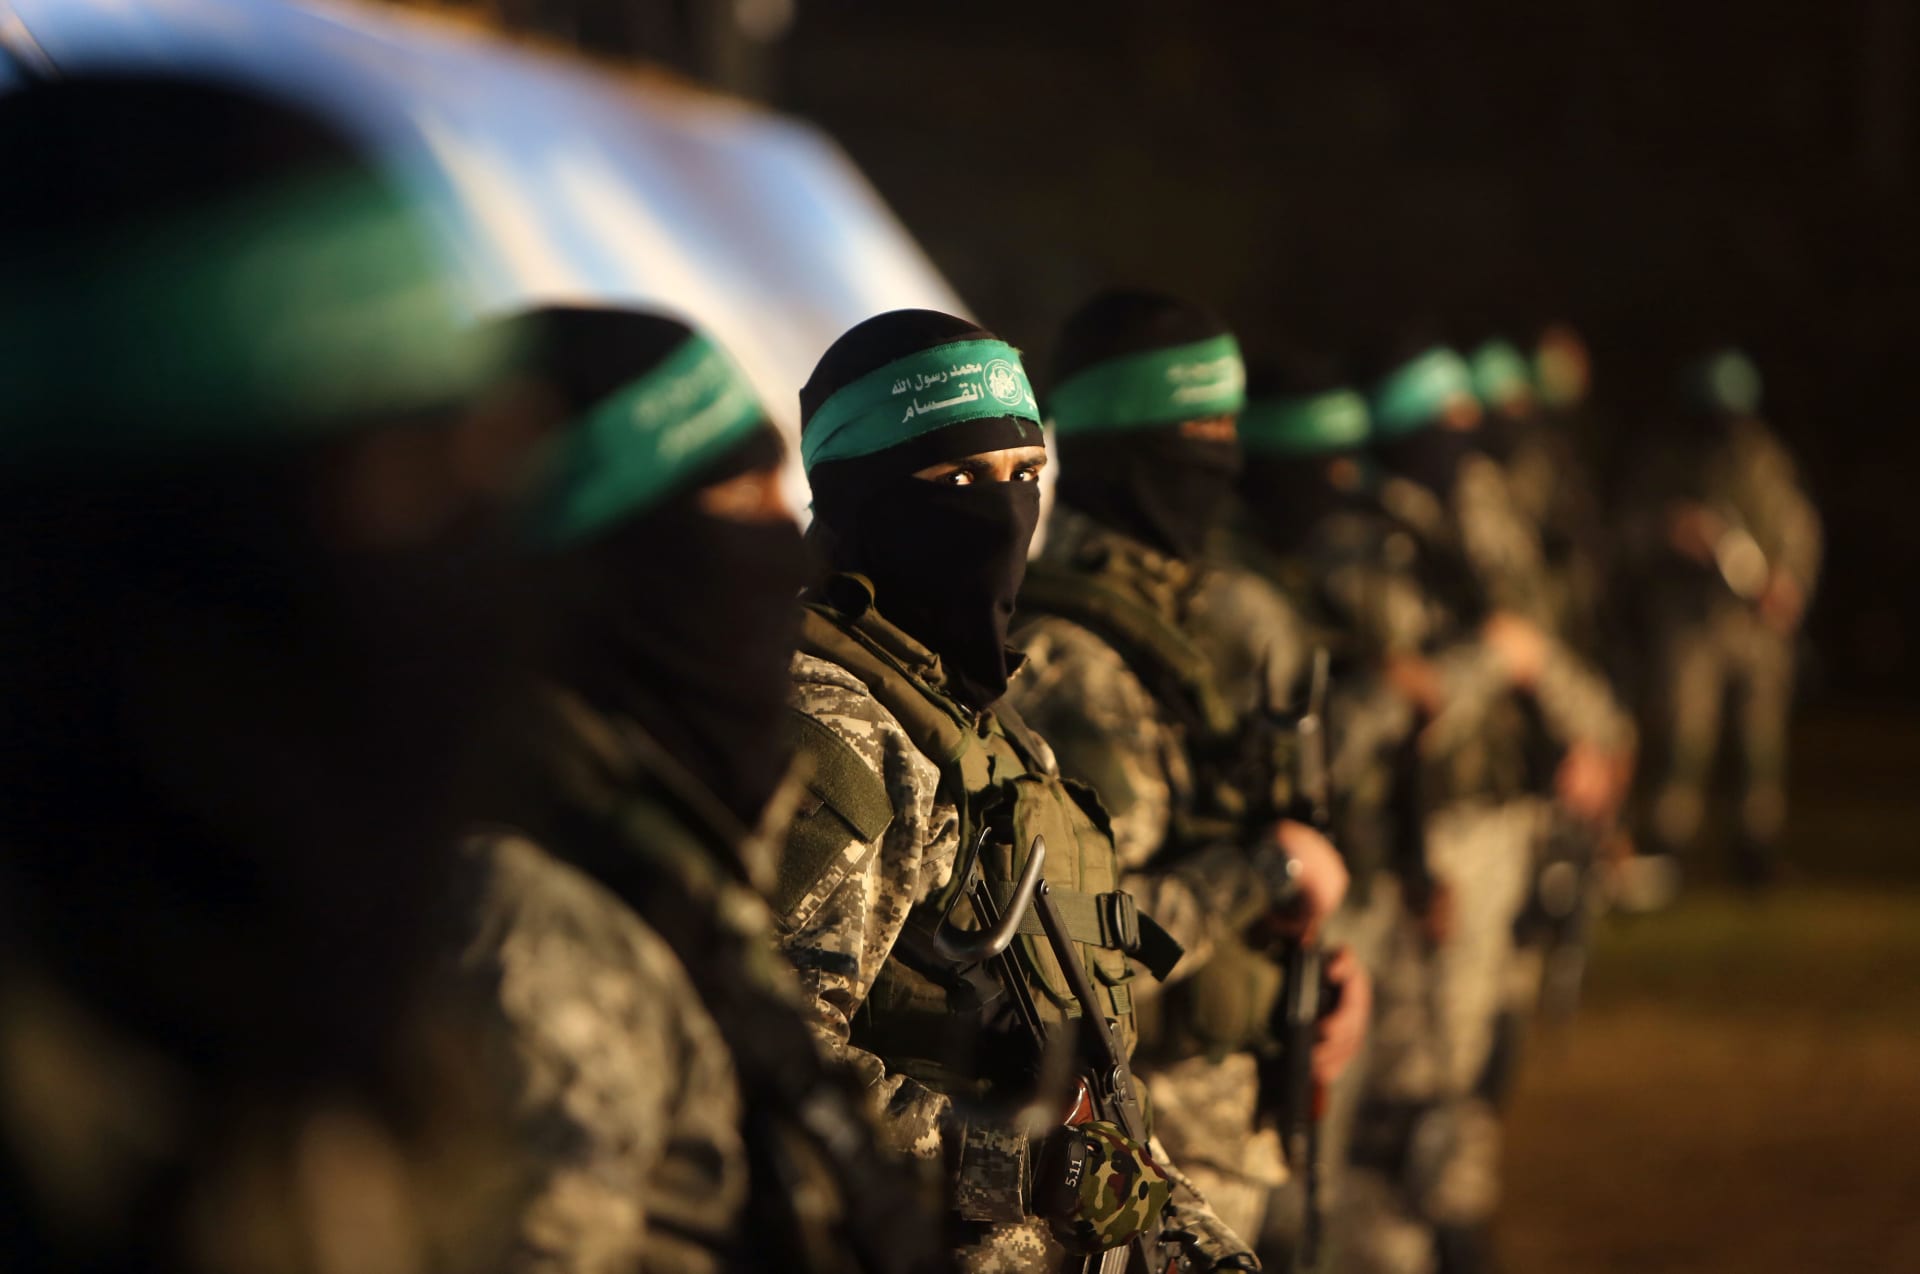 اليابان تعلن فرض عقوبات على أفراد وشركة على صلة بـ"حماس"